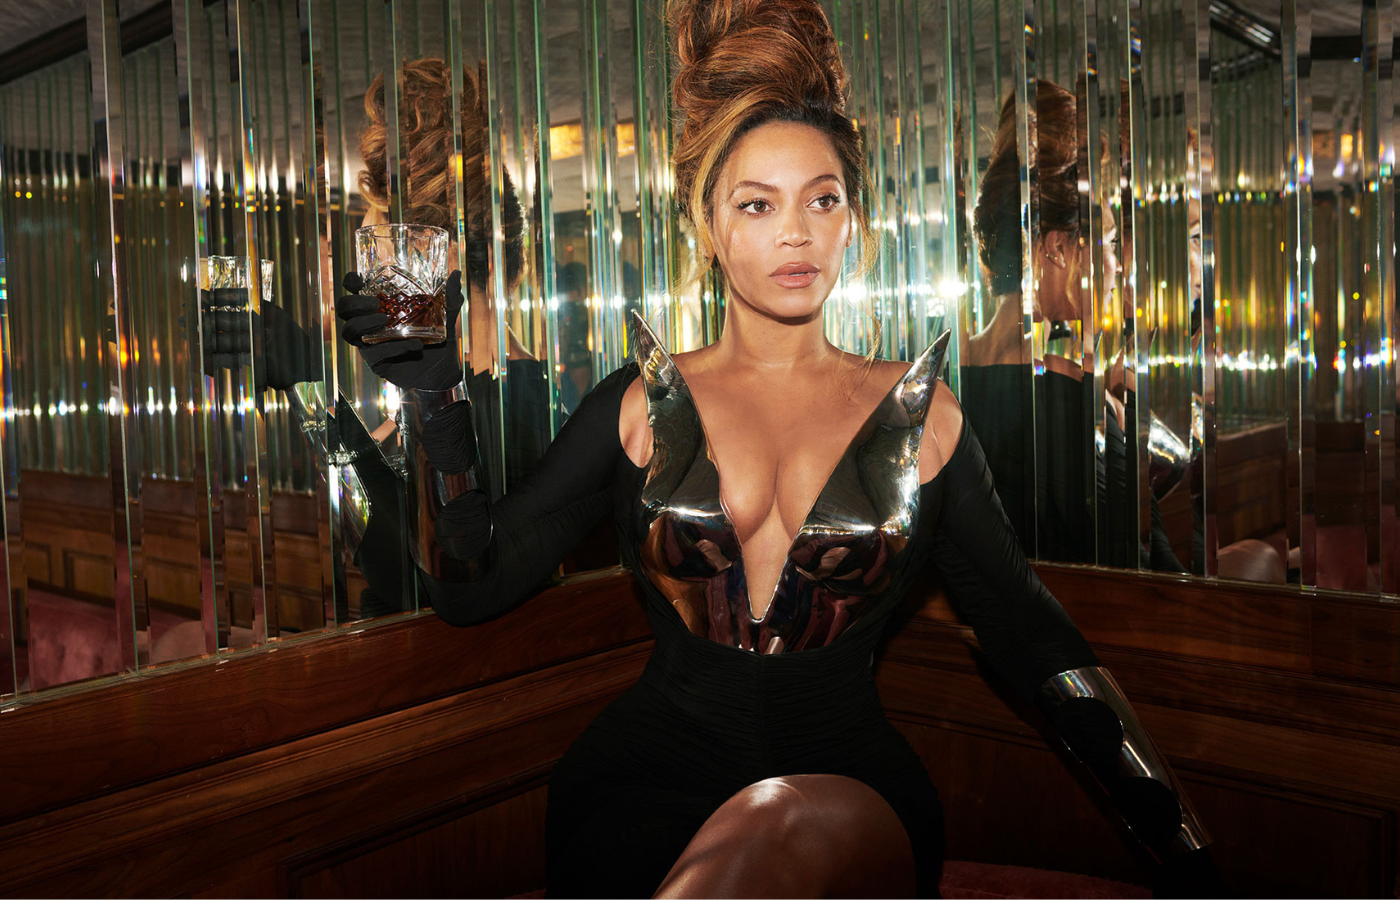 Na foto, Beyoncé segura um copo na mão direita que está levantada. Ela está sentada ereta, com as pernas cruzadas. Seu cabelo está preso em um volumoso coque, de onde caem fios que aparecem como uma franja. Ela usa um vestido preto com detalhes prata. O fundo é composto por espelhos e uma parede (ou encosto de banco) feita com madeira.